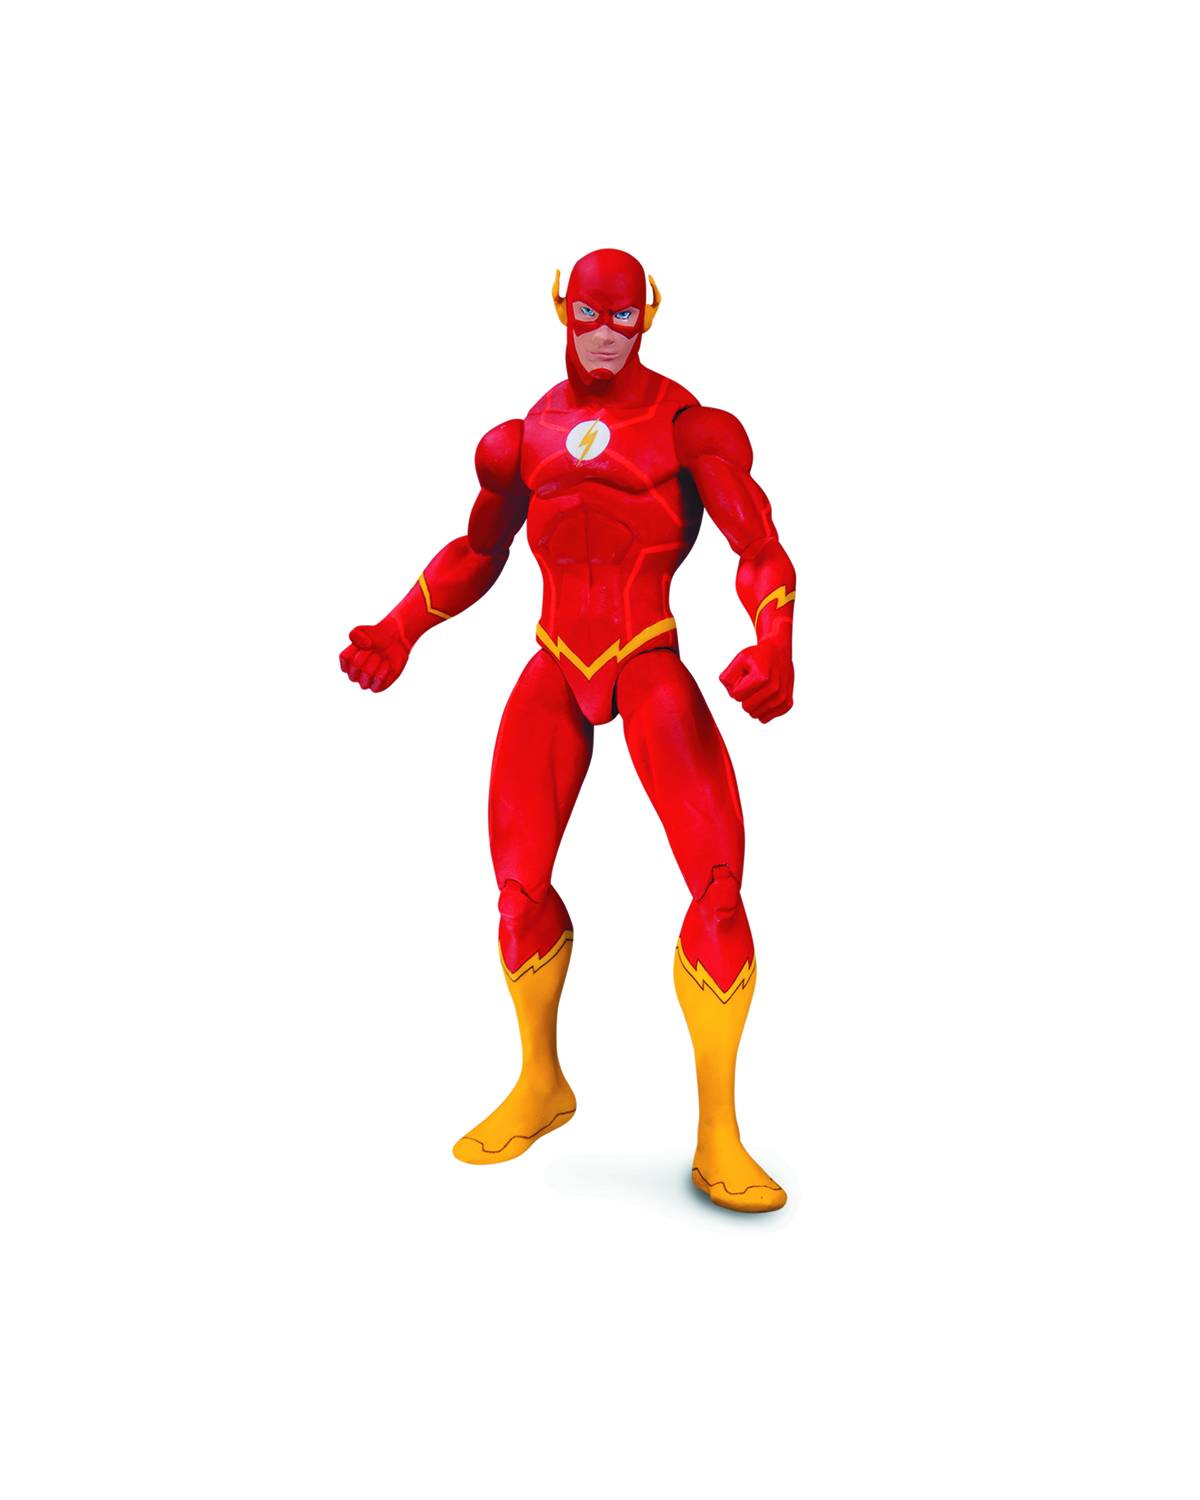 Justice League War Flash Action Figure